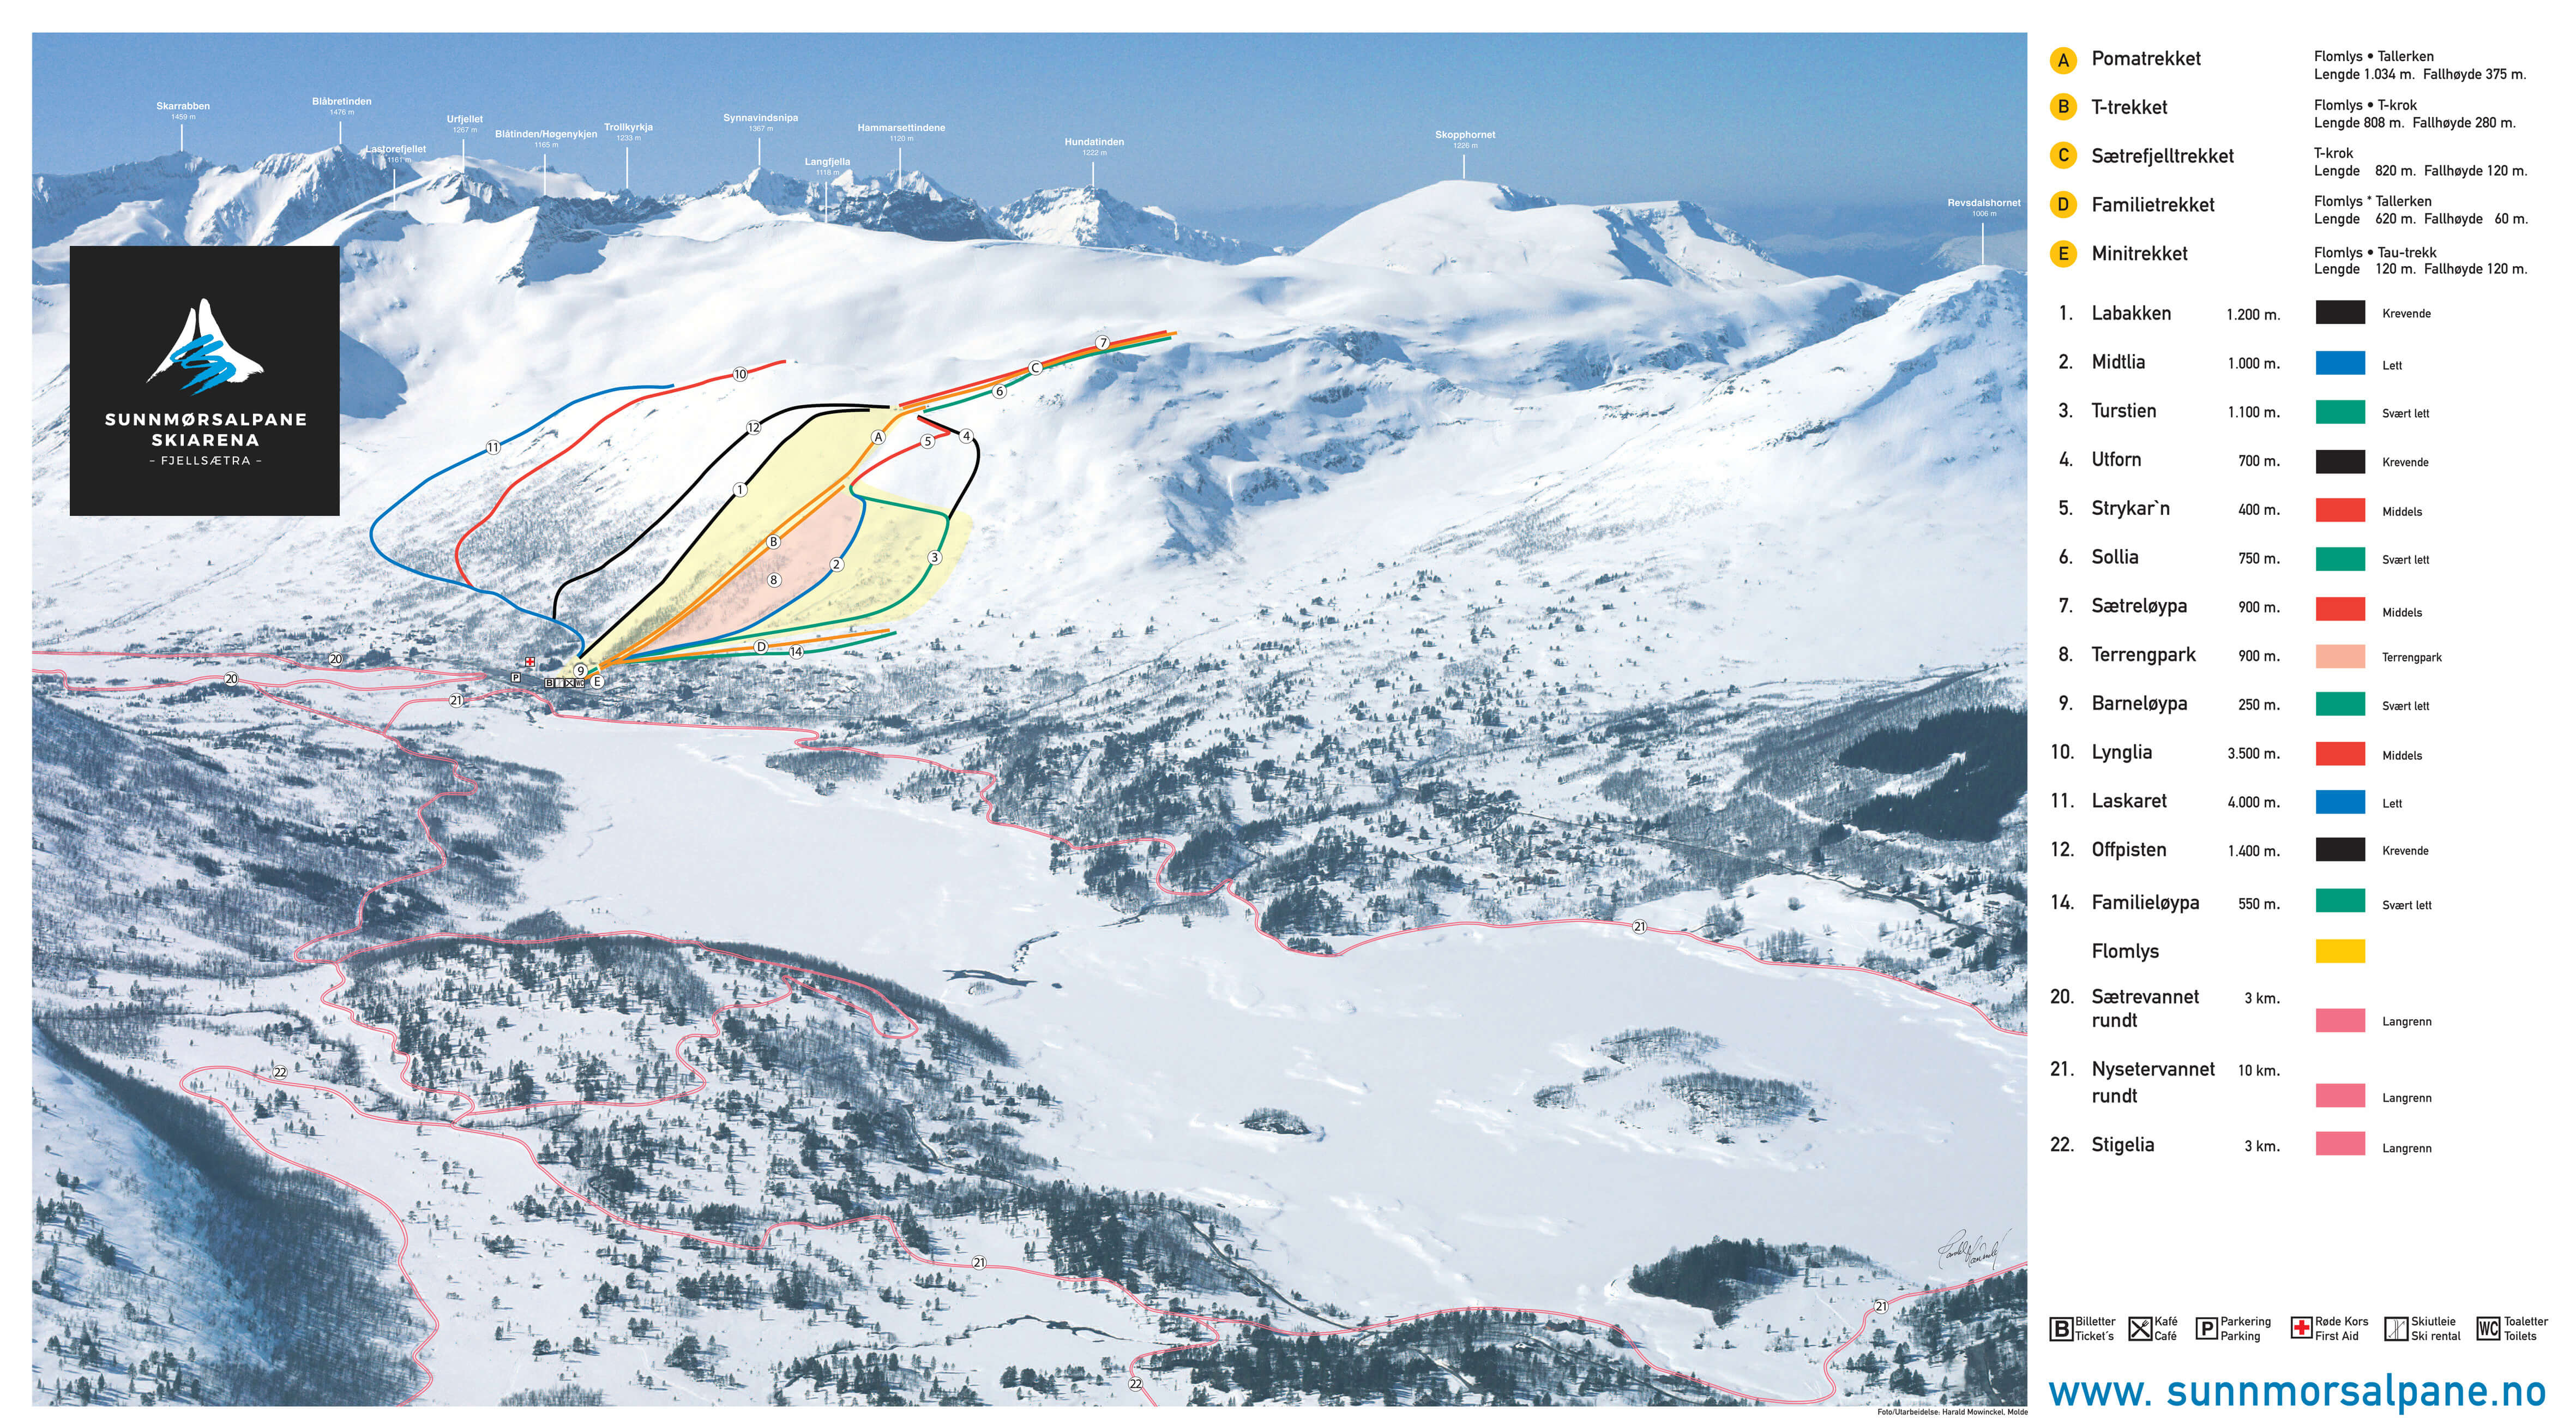 Sunnmørsalpane Fjellsætra Ski Resort Piste Map